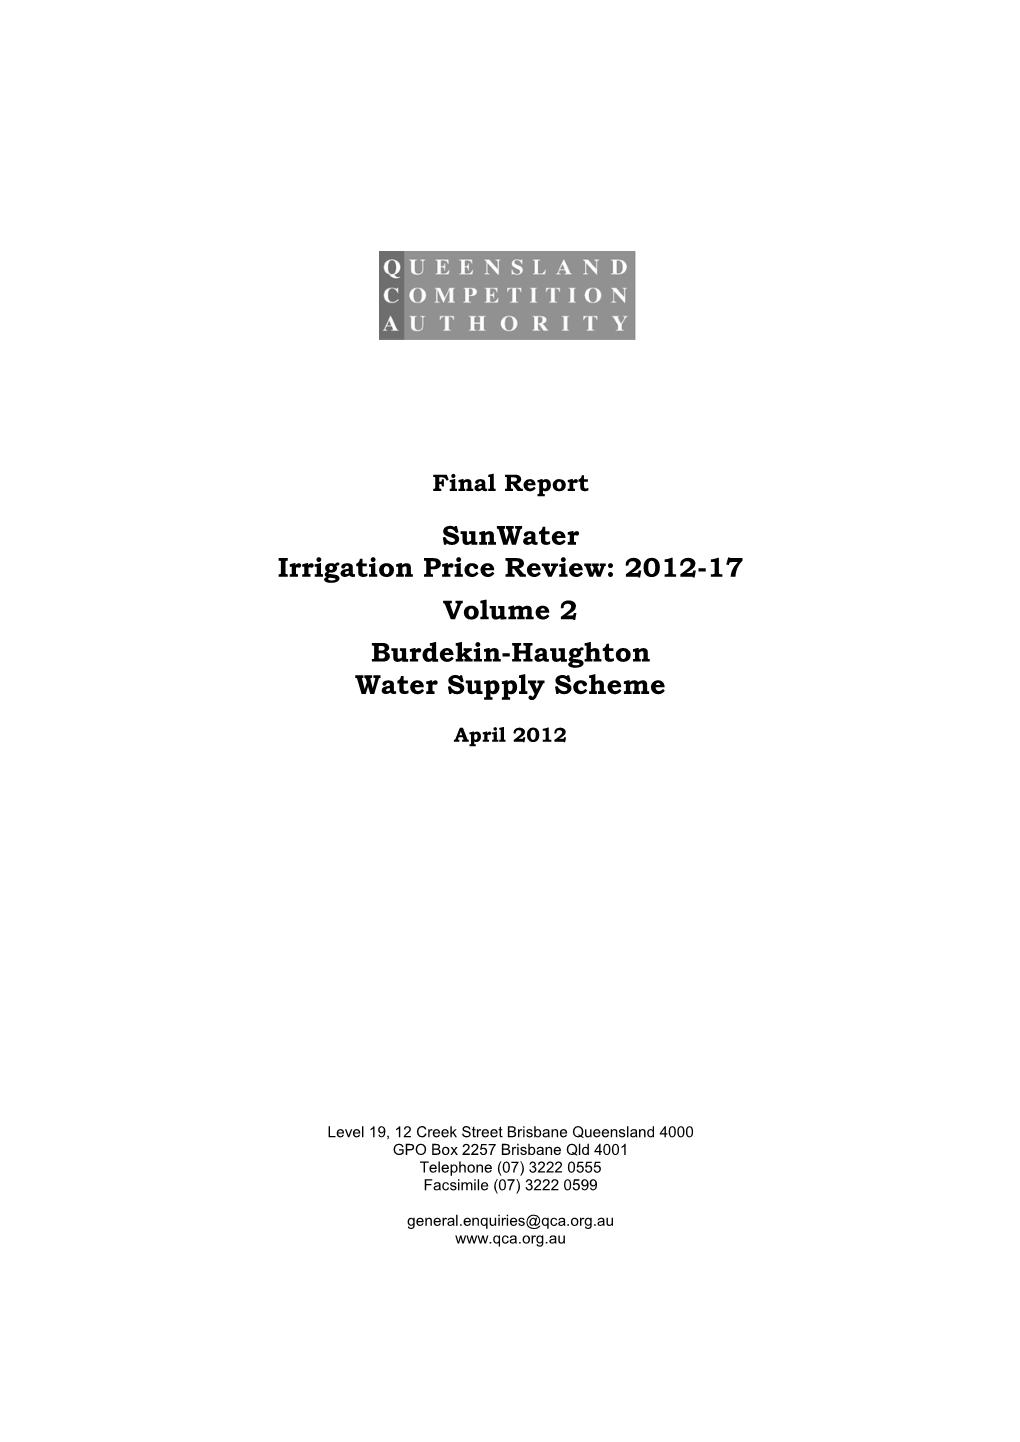 Sunwater Irrigation Price Review: 2012-17 Volume 2 Burdekin-Haughton Water Supply Scheme